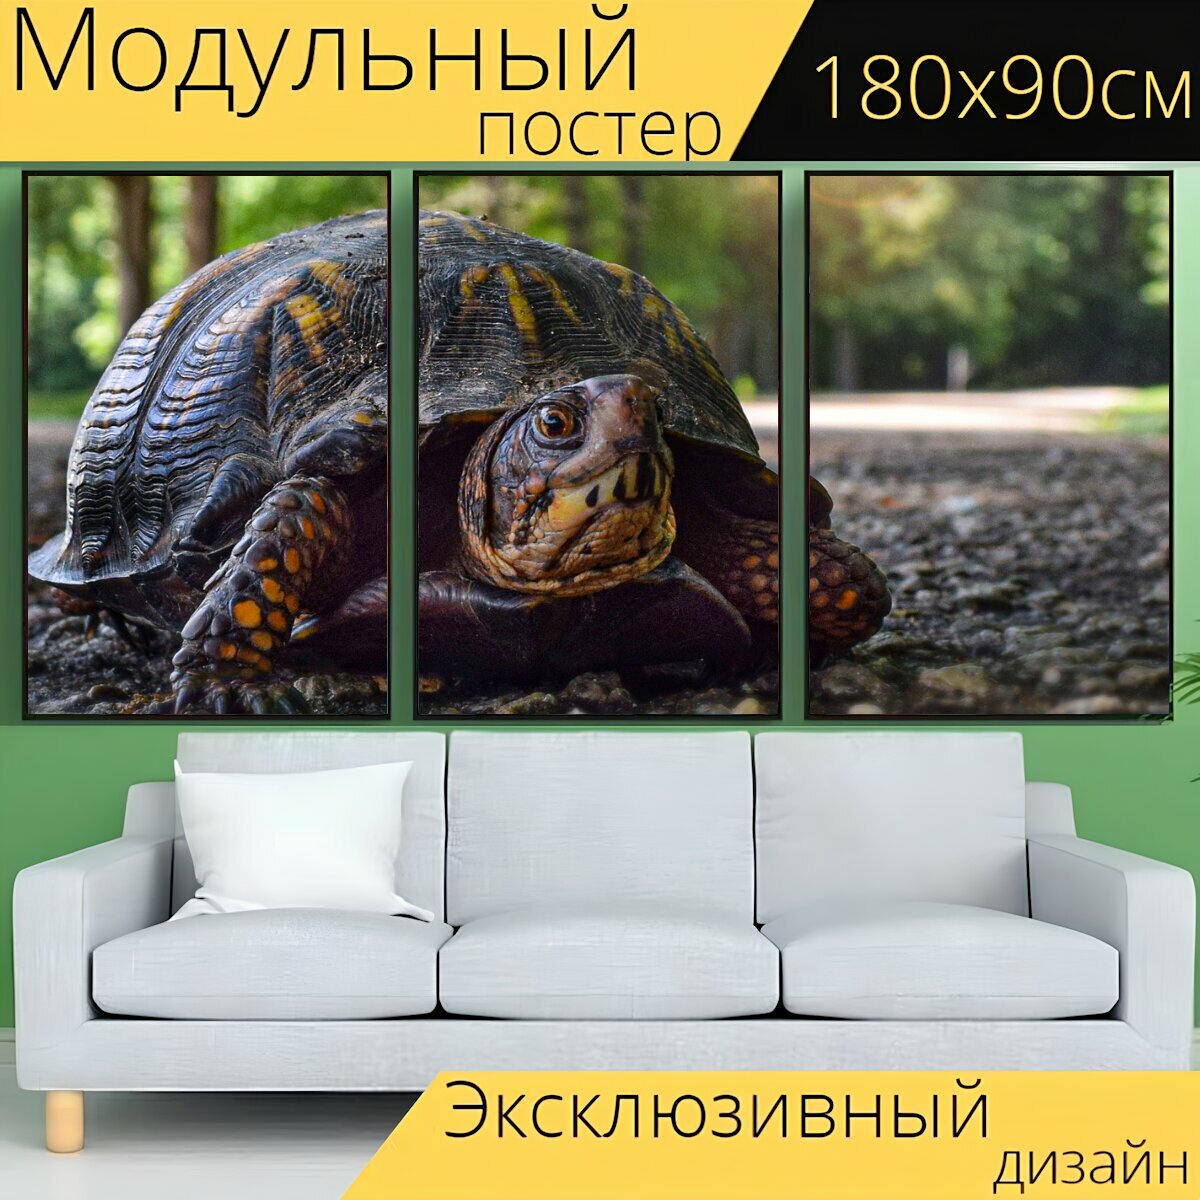 Модульный постер "Черепаха, природа, медленно" 180 x 90 см. для интерьера